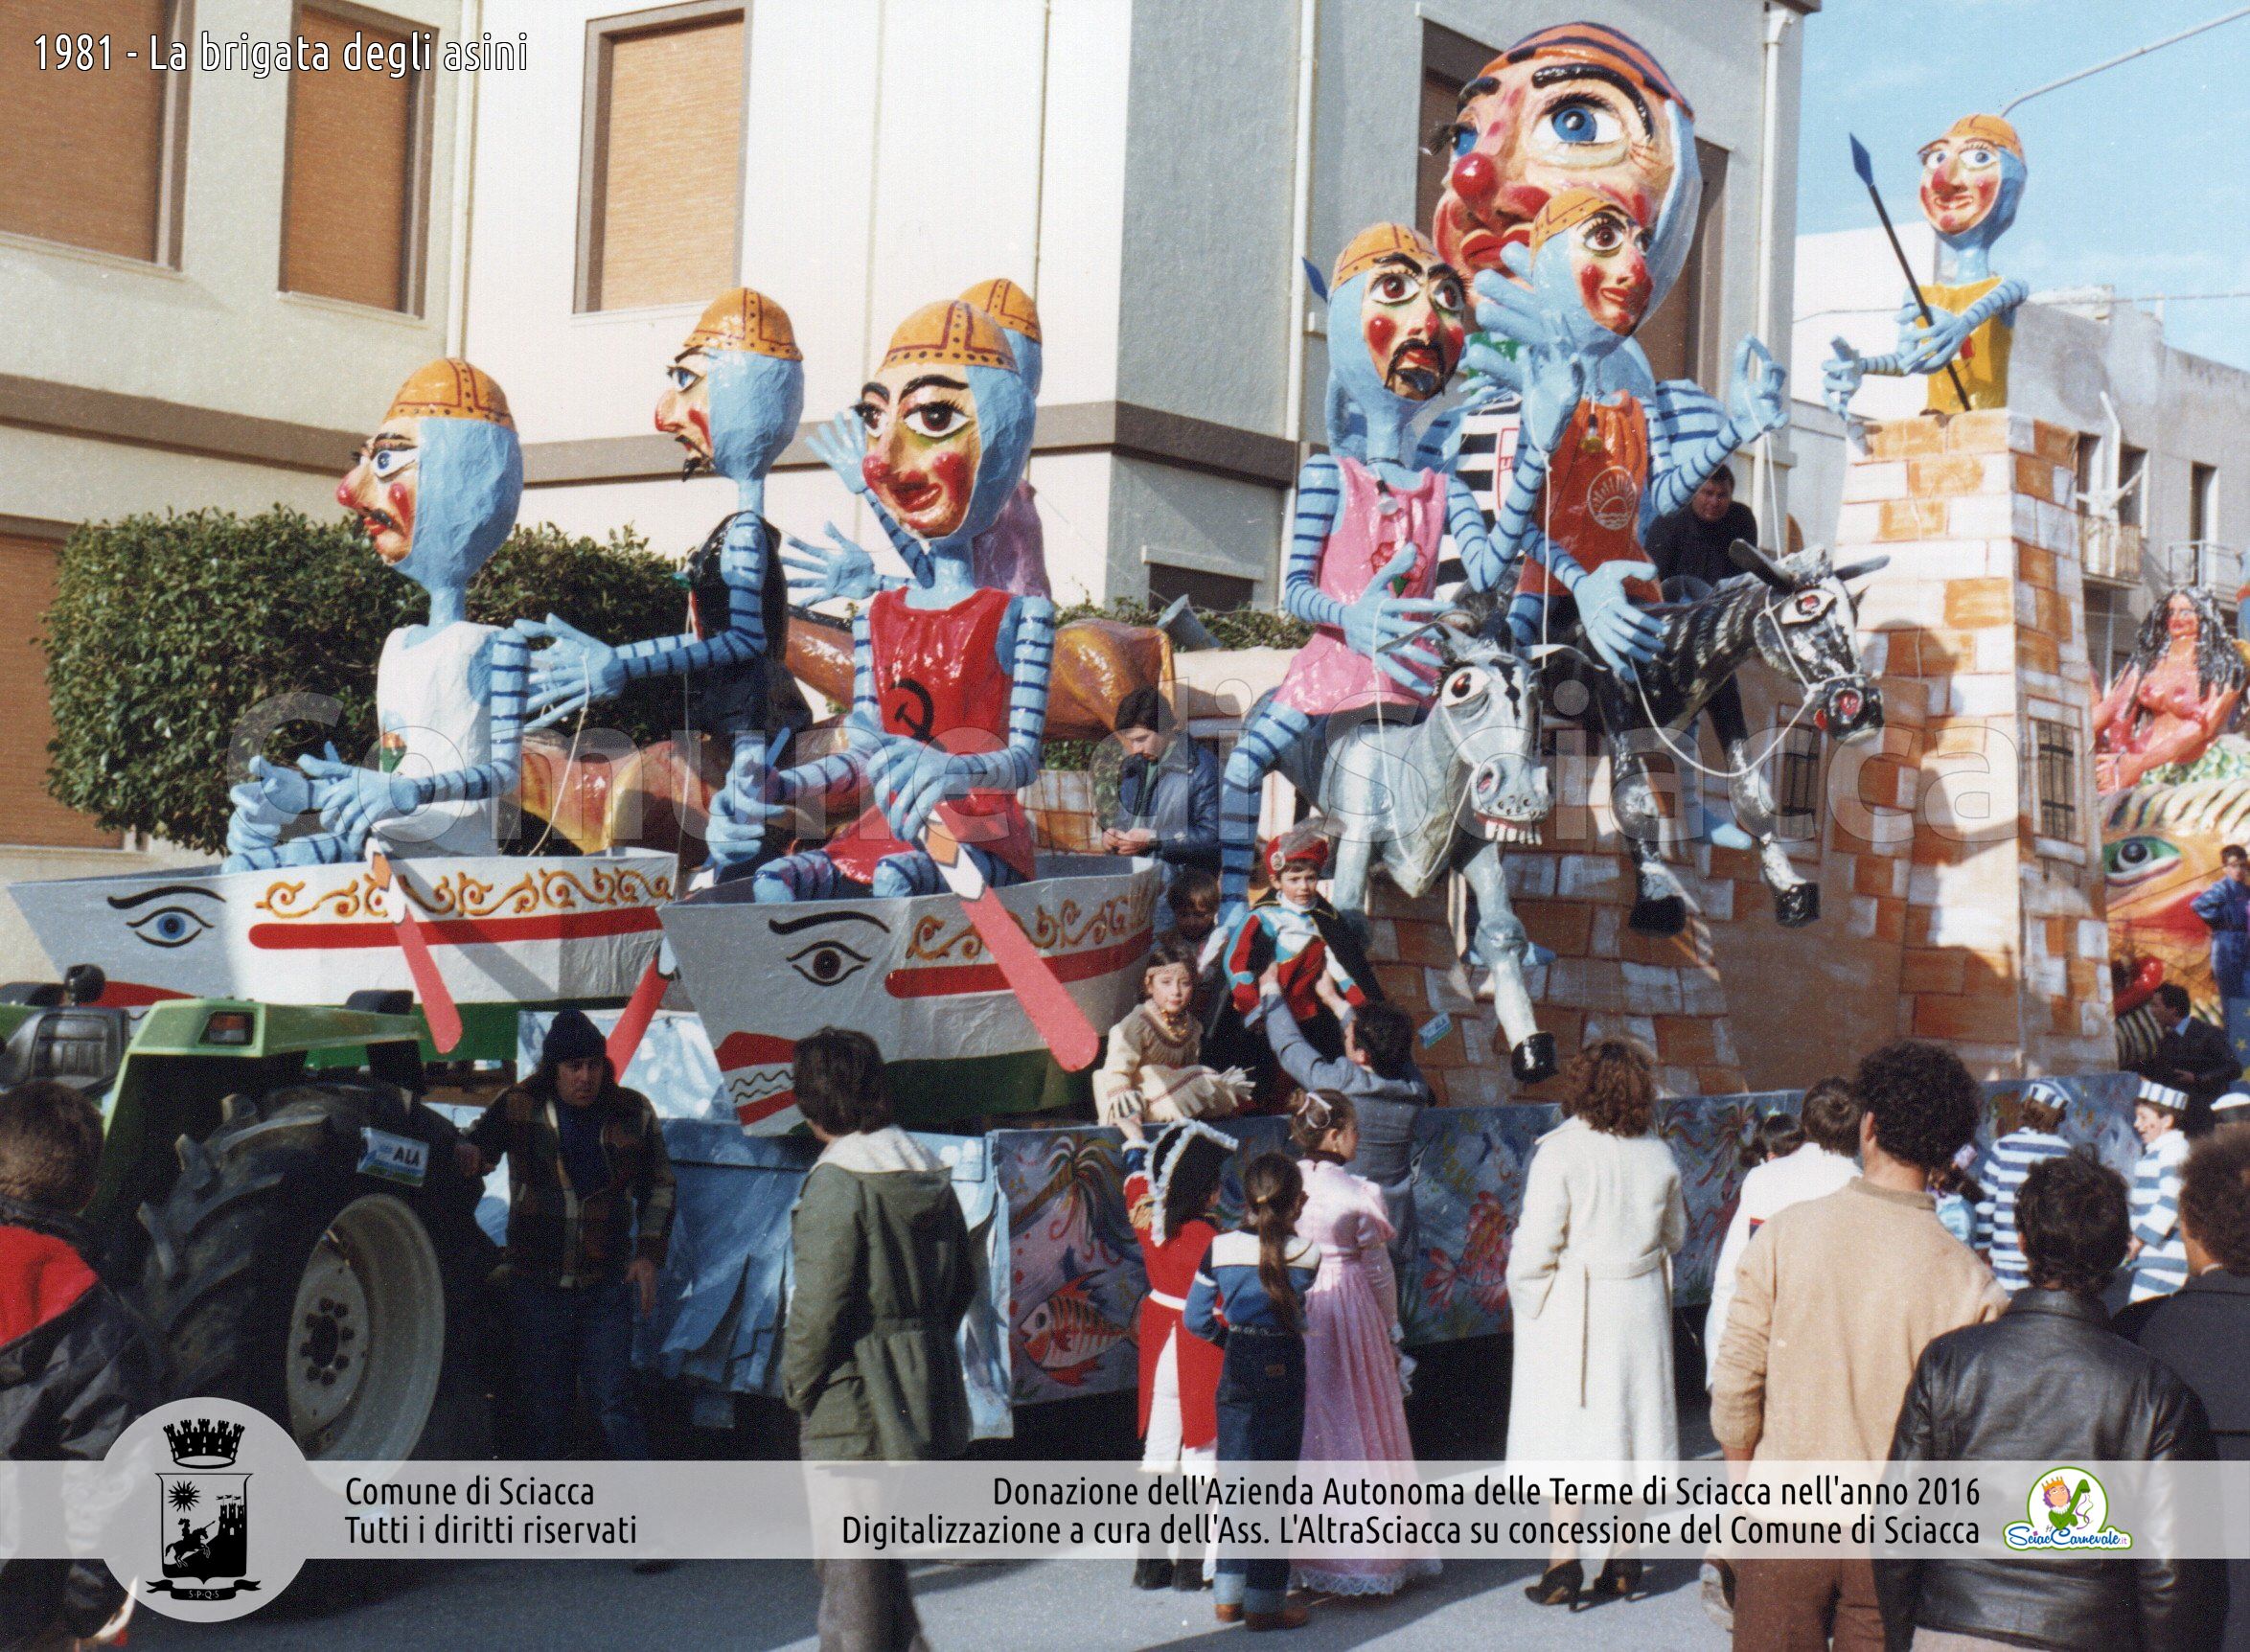 Le foto storiche del Carnevale di Sciacca donate dall’Azienda Autonoma delle Terme